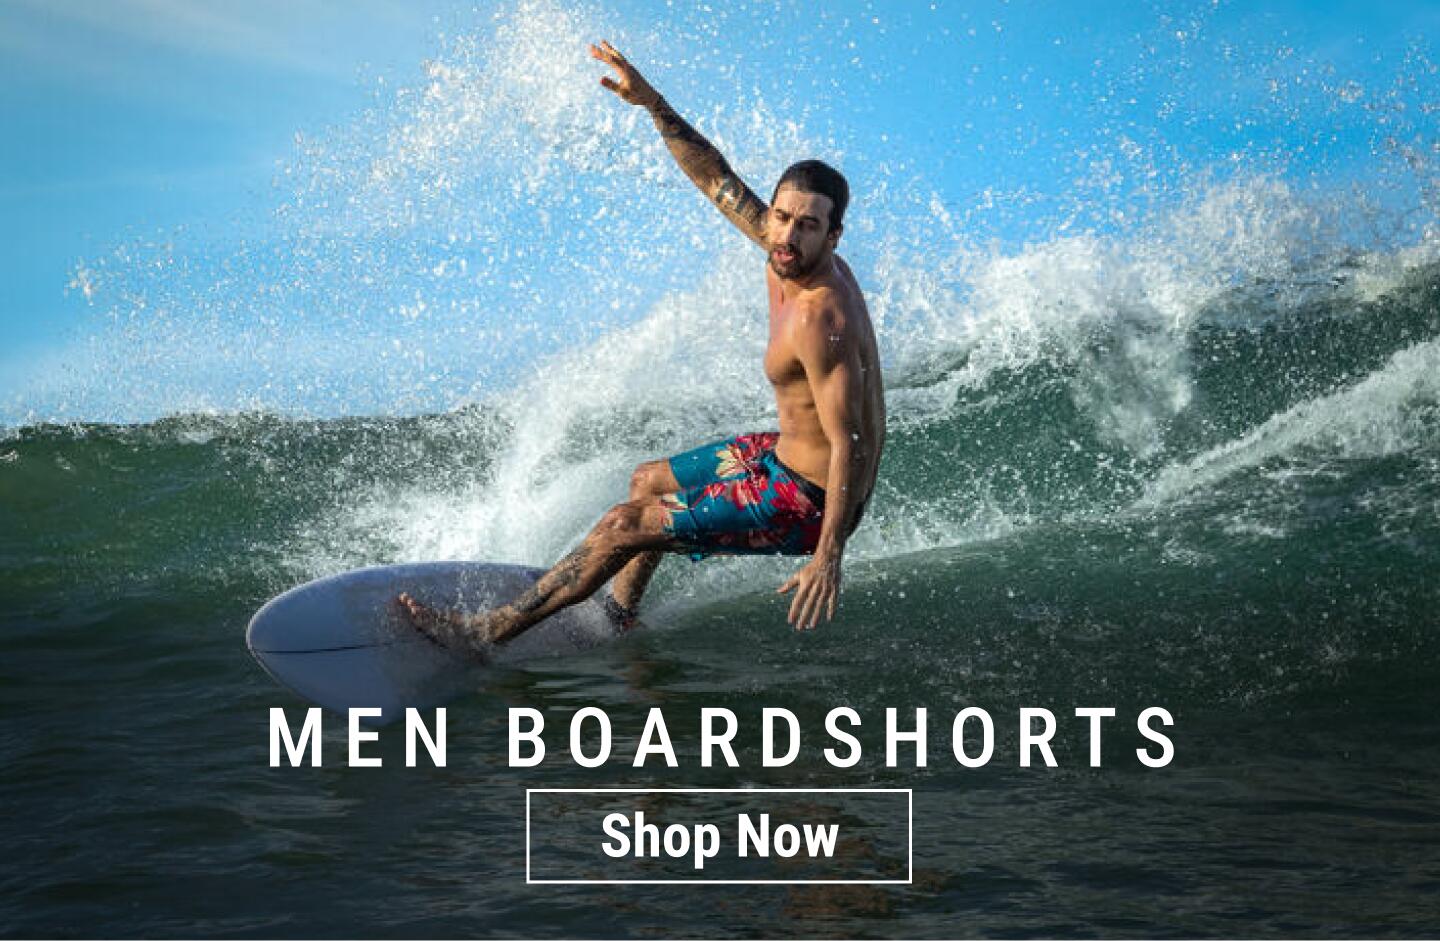 Men's Boardshorts - Shop Now